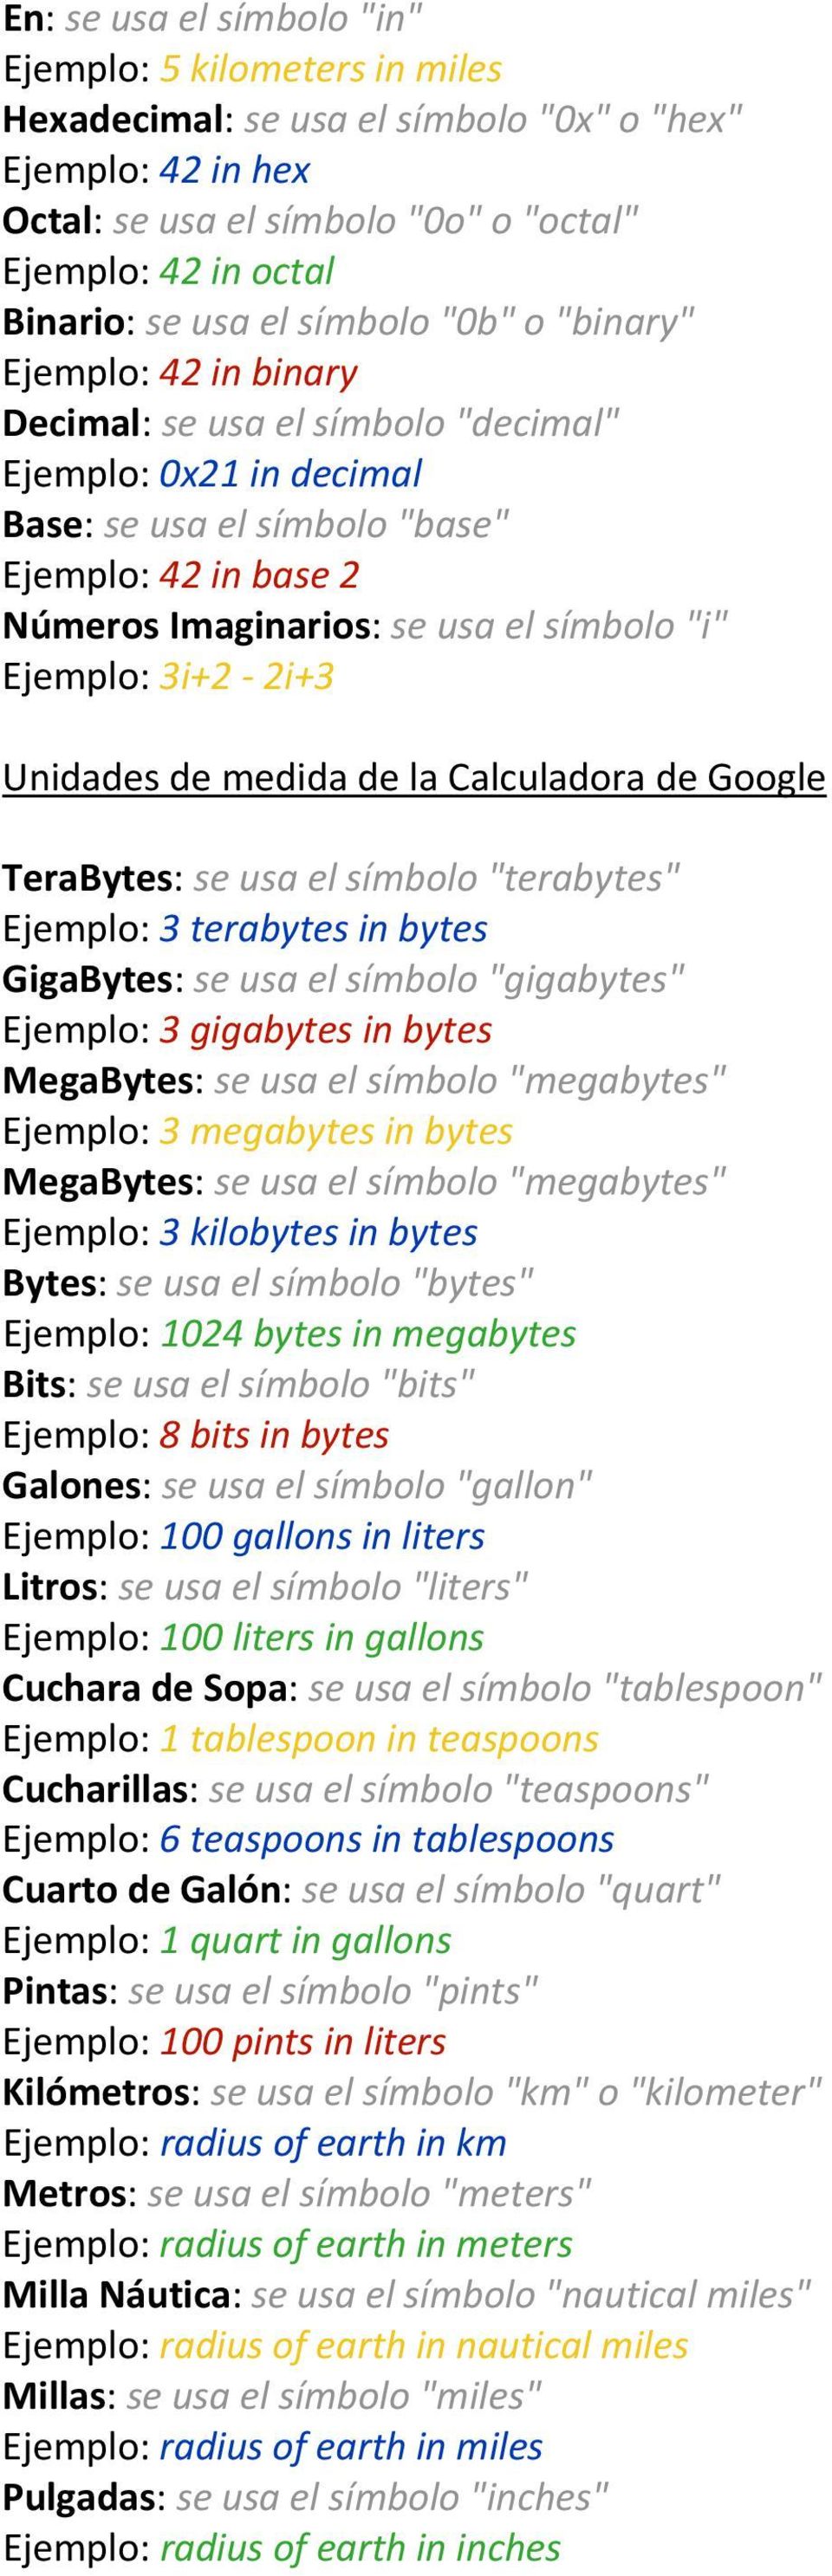 símbolo "i" Ejemplo: 3i+2 2i+3 Unidades de medida de la Calculadora de Google TeraBytes: se usa el símbolo "terabytes" Ejemplo: 3 terabytes in bytes GigaBytes: se usa el símbolo "gigabytes" Ejemplo: